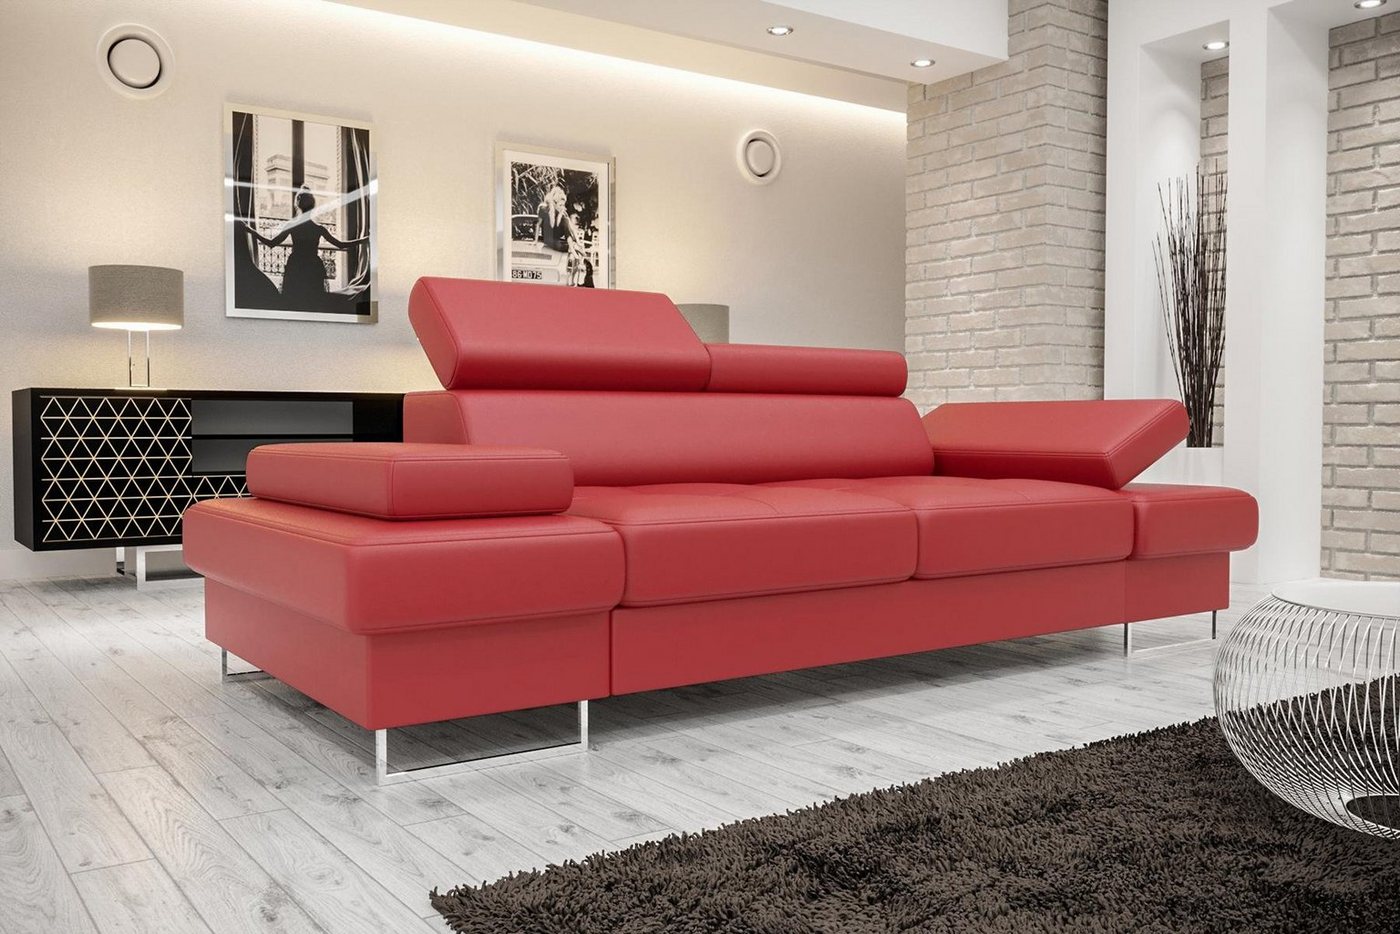 JVmoebel Sofa Design Sofa 3 Sitzer Multifunktion Couch Polster Schlafsofas Sofas, Made In Europa von JVmoebel